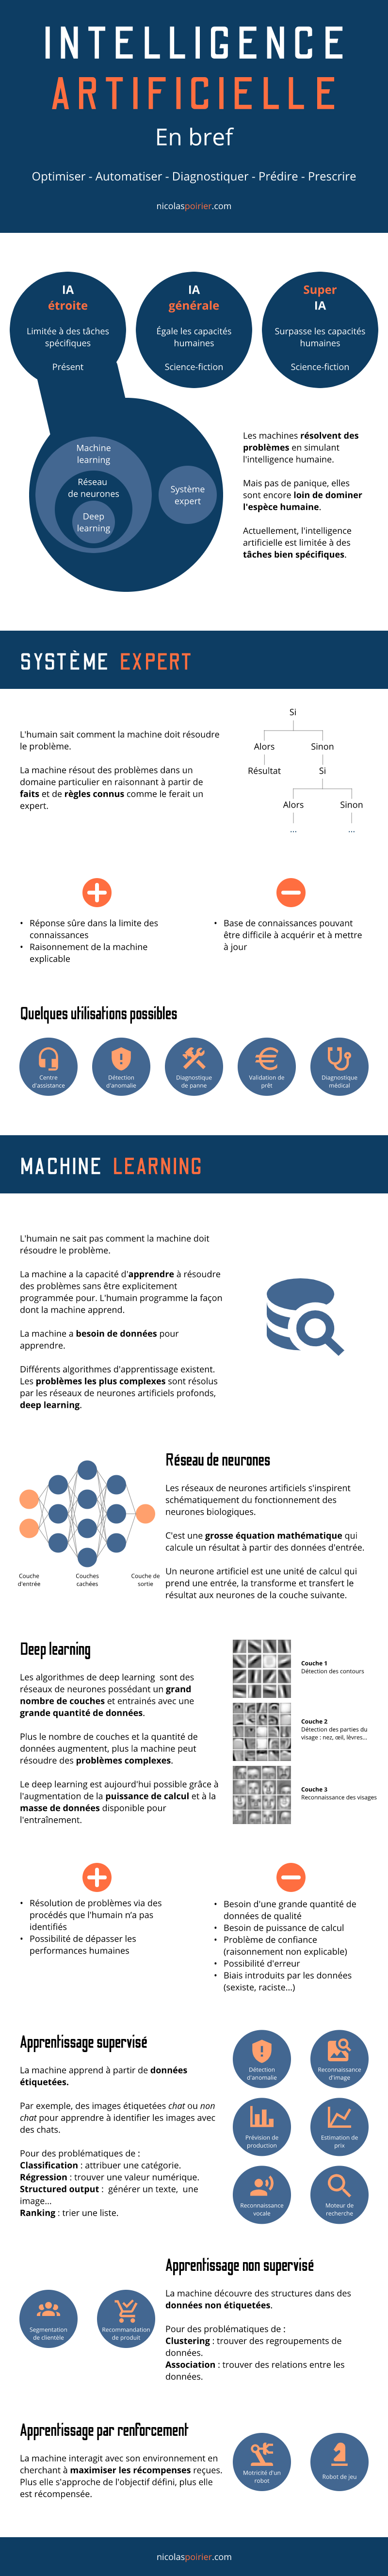 Infographie au sujet de l'intelligence artificielle : Machine Learning, Réseau de neurones, Deep Learning, Système Expert